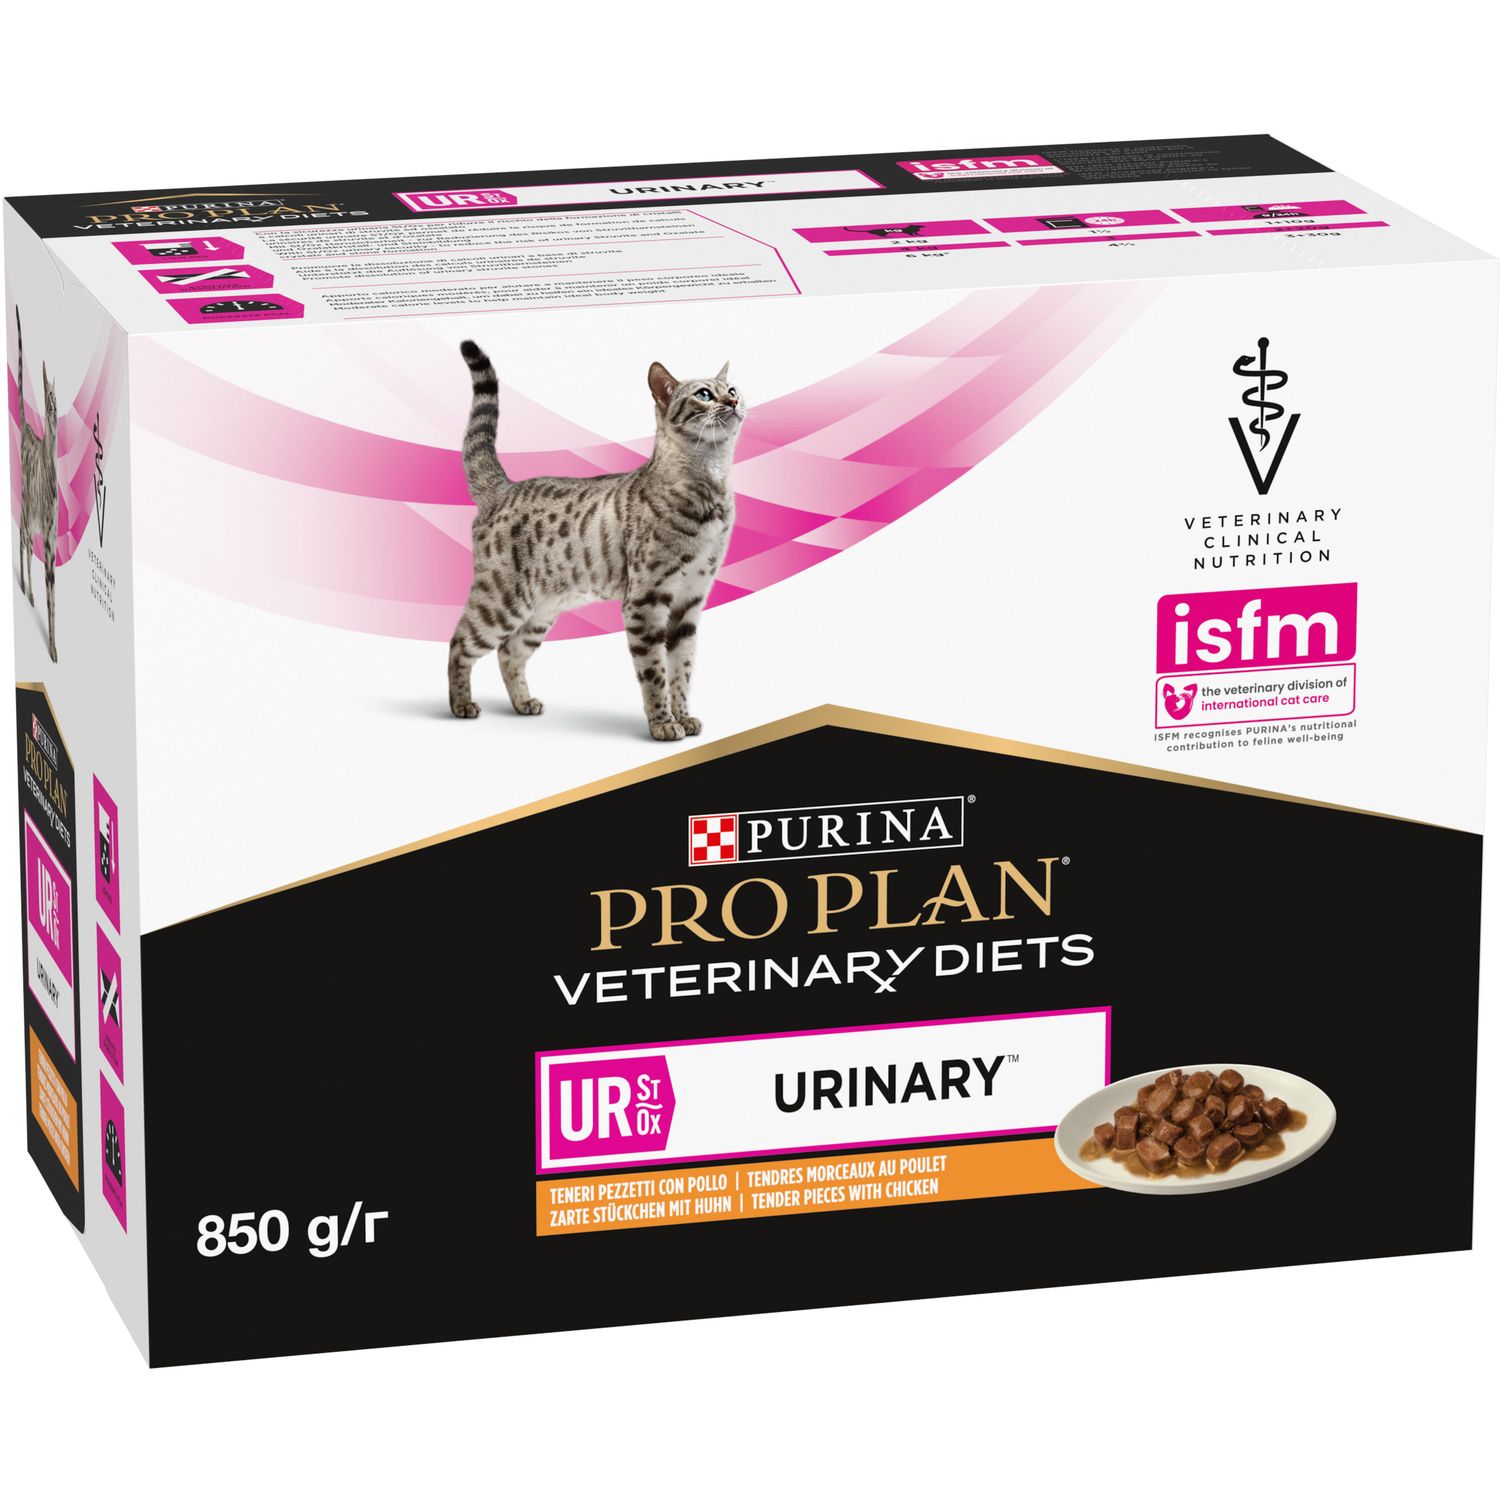 Вологий дієтичний корм для дорослих котів Purina Pro Plan Veterinary Diets UR ST/OX Urinary для розчинення та зниження утворення струвітних каменів з куркою 850 г (10 шт. по 85 г) (12308818) - фото 3